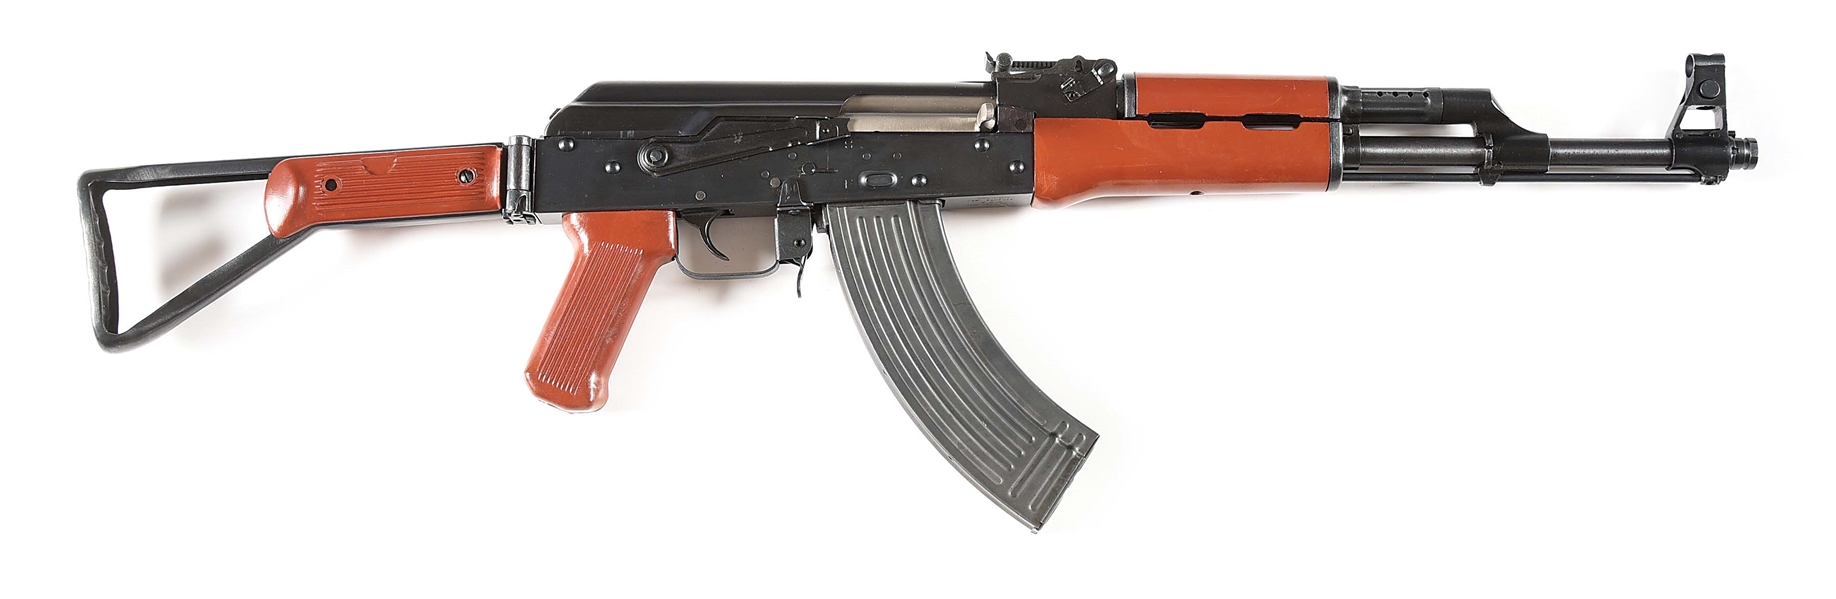 (M) PRE-BAN POLY TECH MODEL AKS-762 BAKELITE SIDE FOLDING SEMI-AUTOMATIC RIFLE.